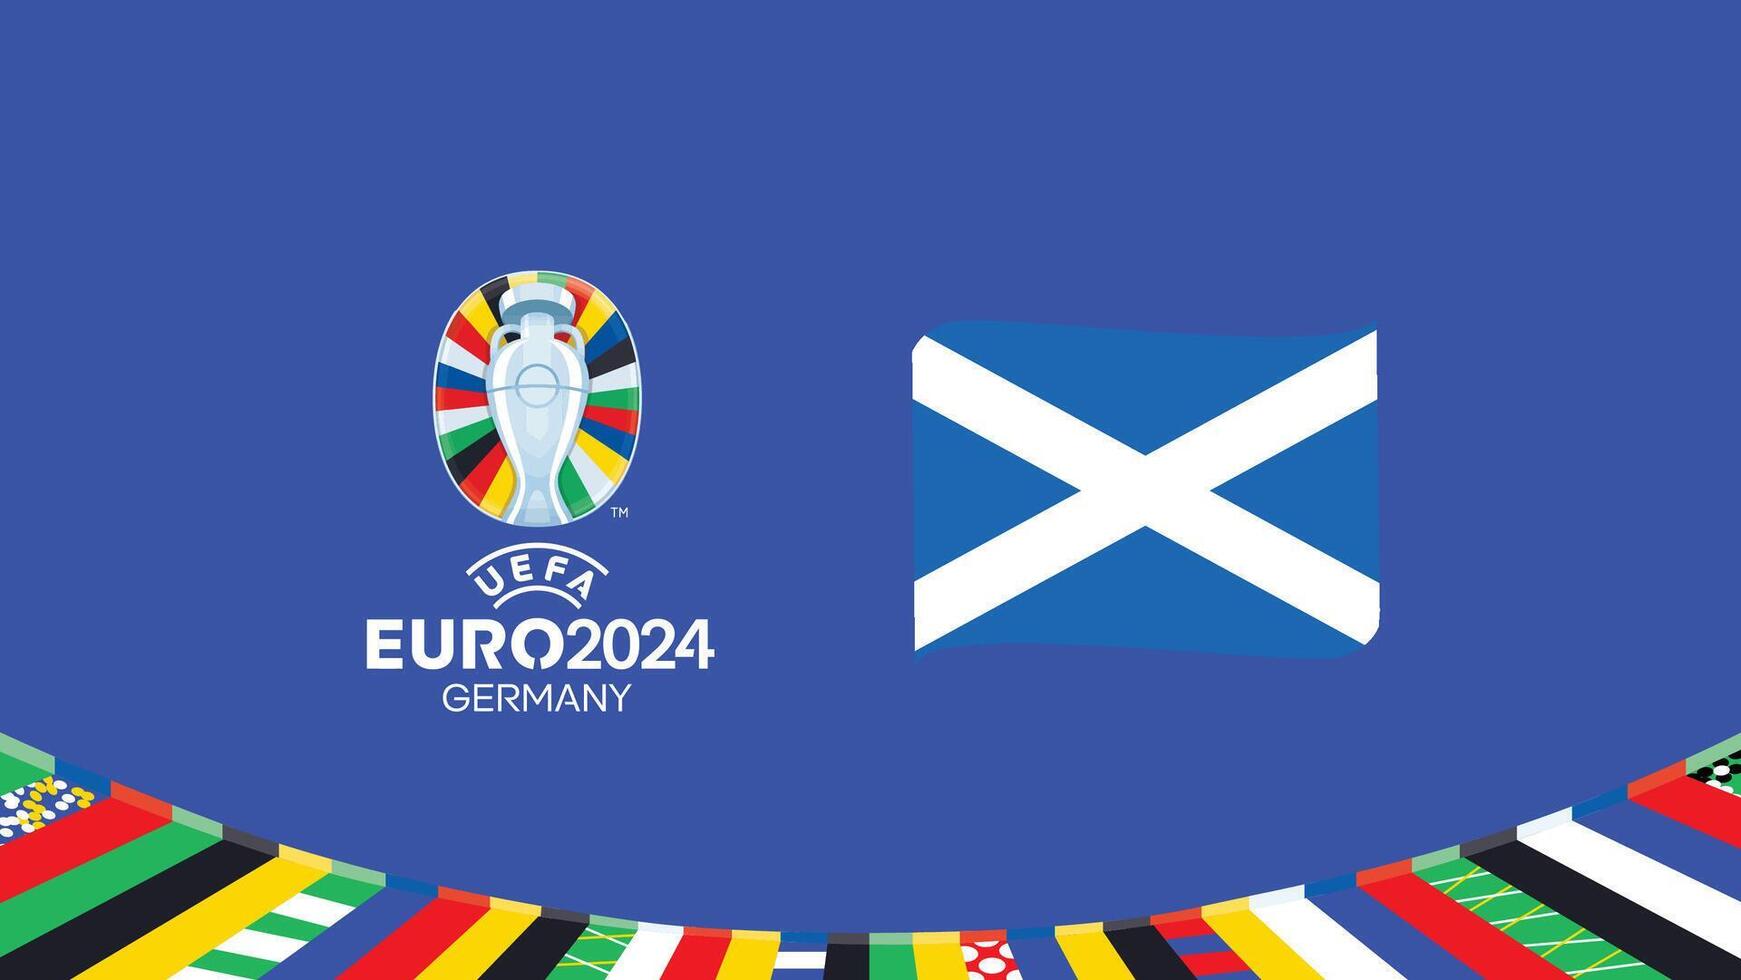 euro 2024 Écosse drapeau ruban équipes conception avec officiel symbole logo abstrait des pays européen Football illustration vecteur